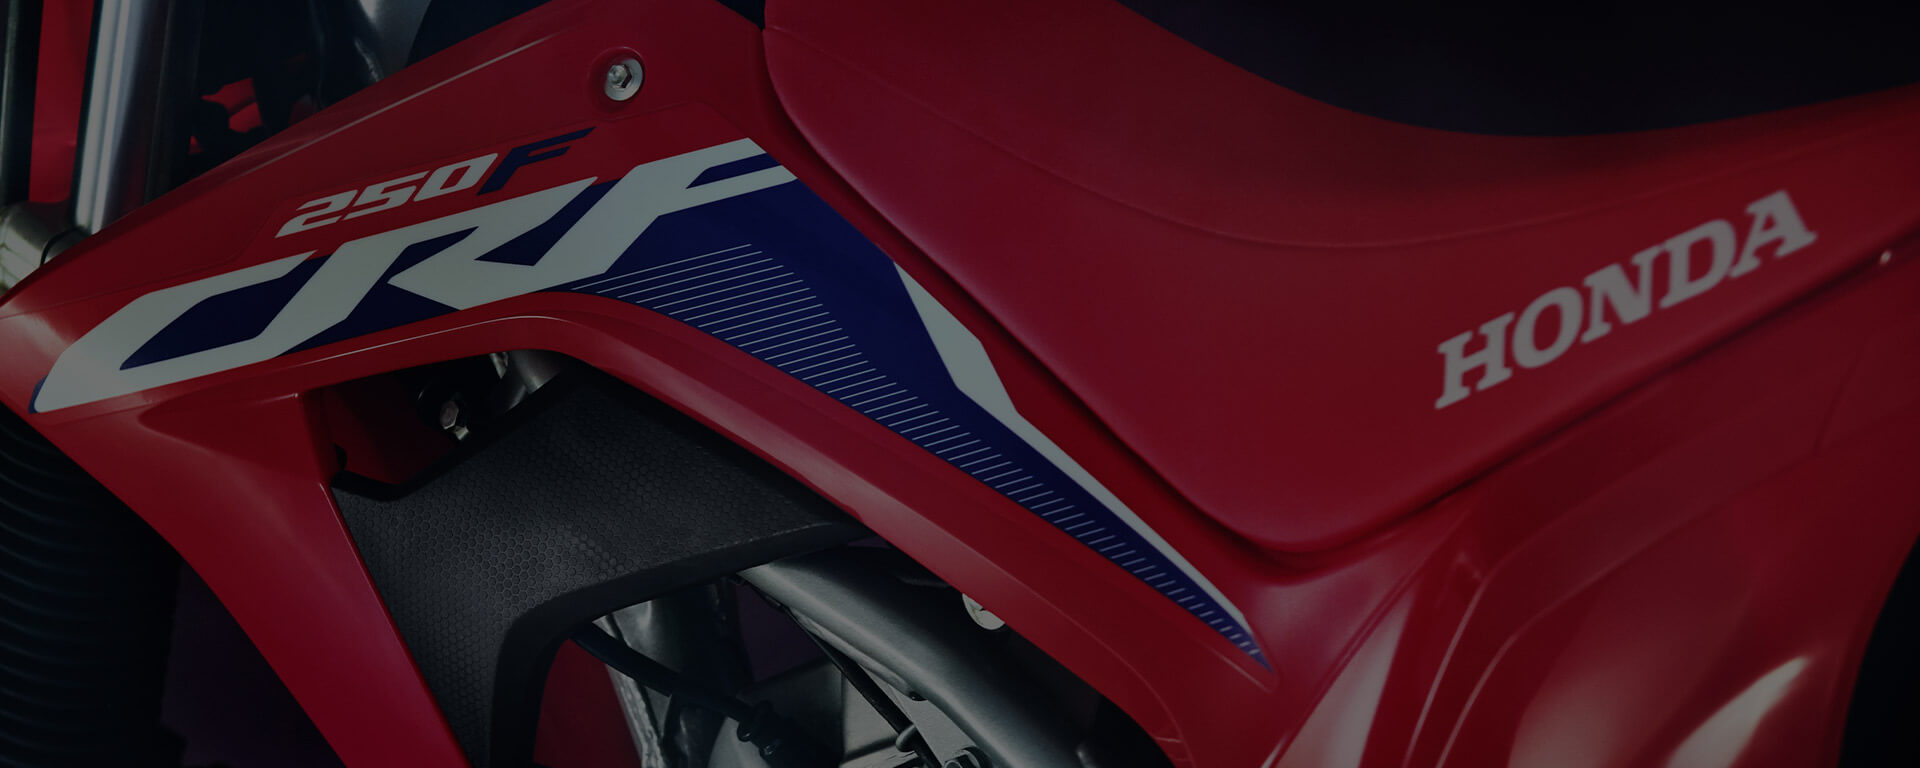 GTA V - Trilha de Moto: Honda XRE 300 